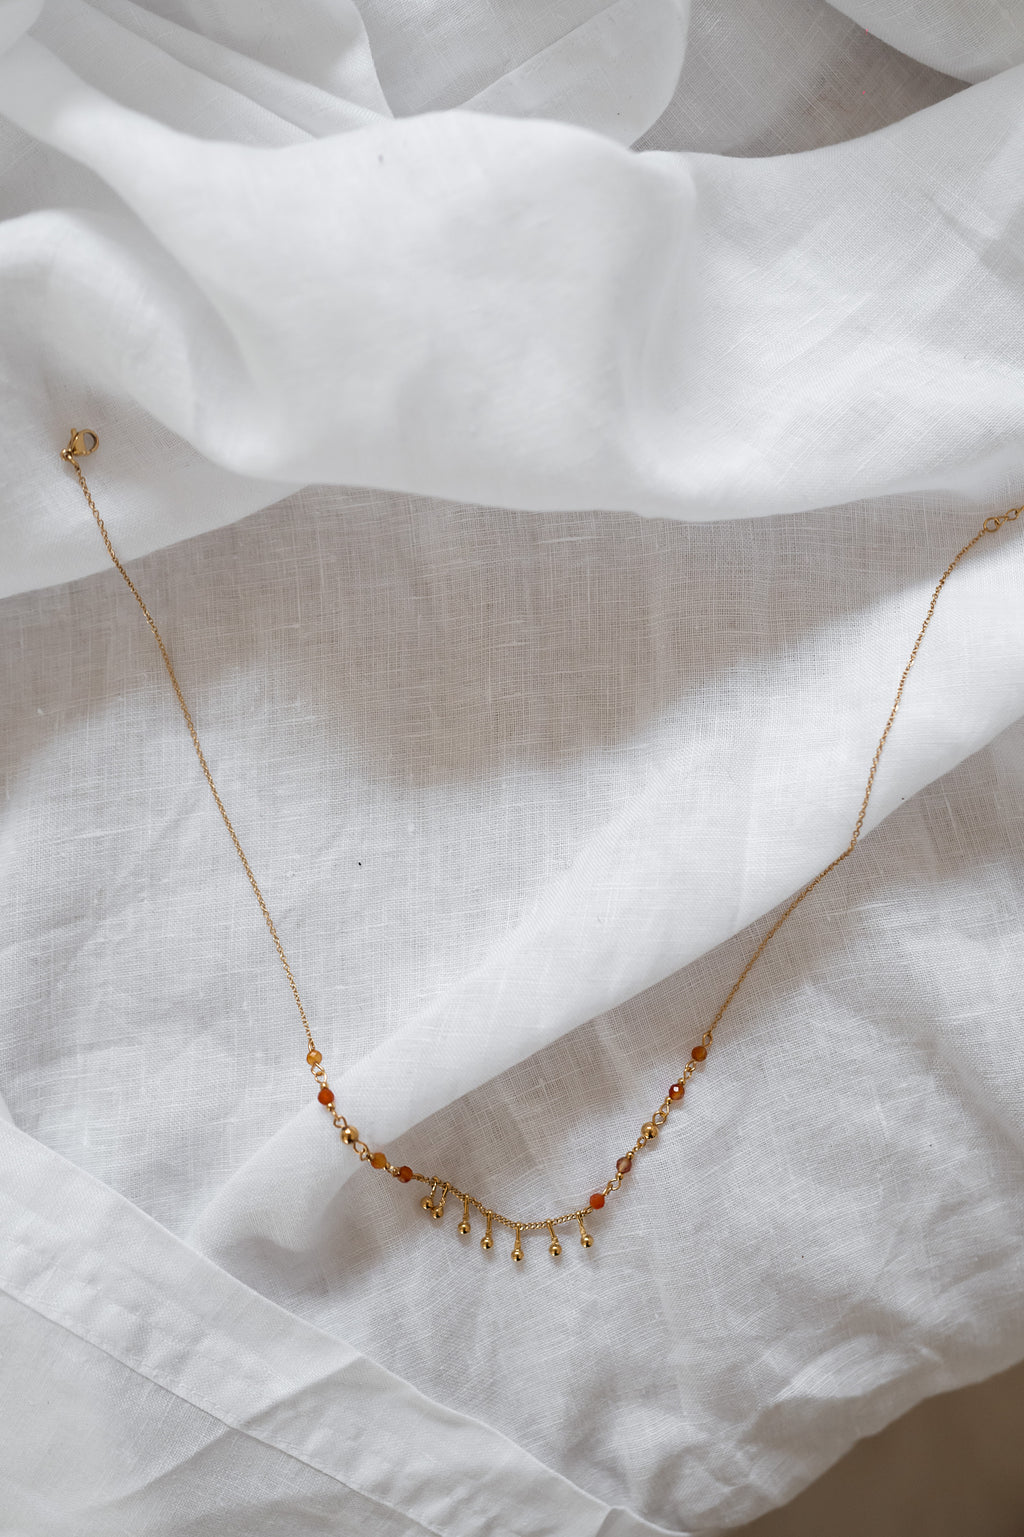 Leewan necklace - golden and orange